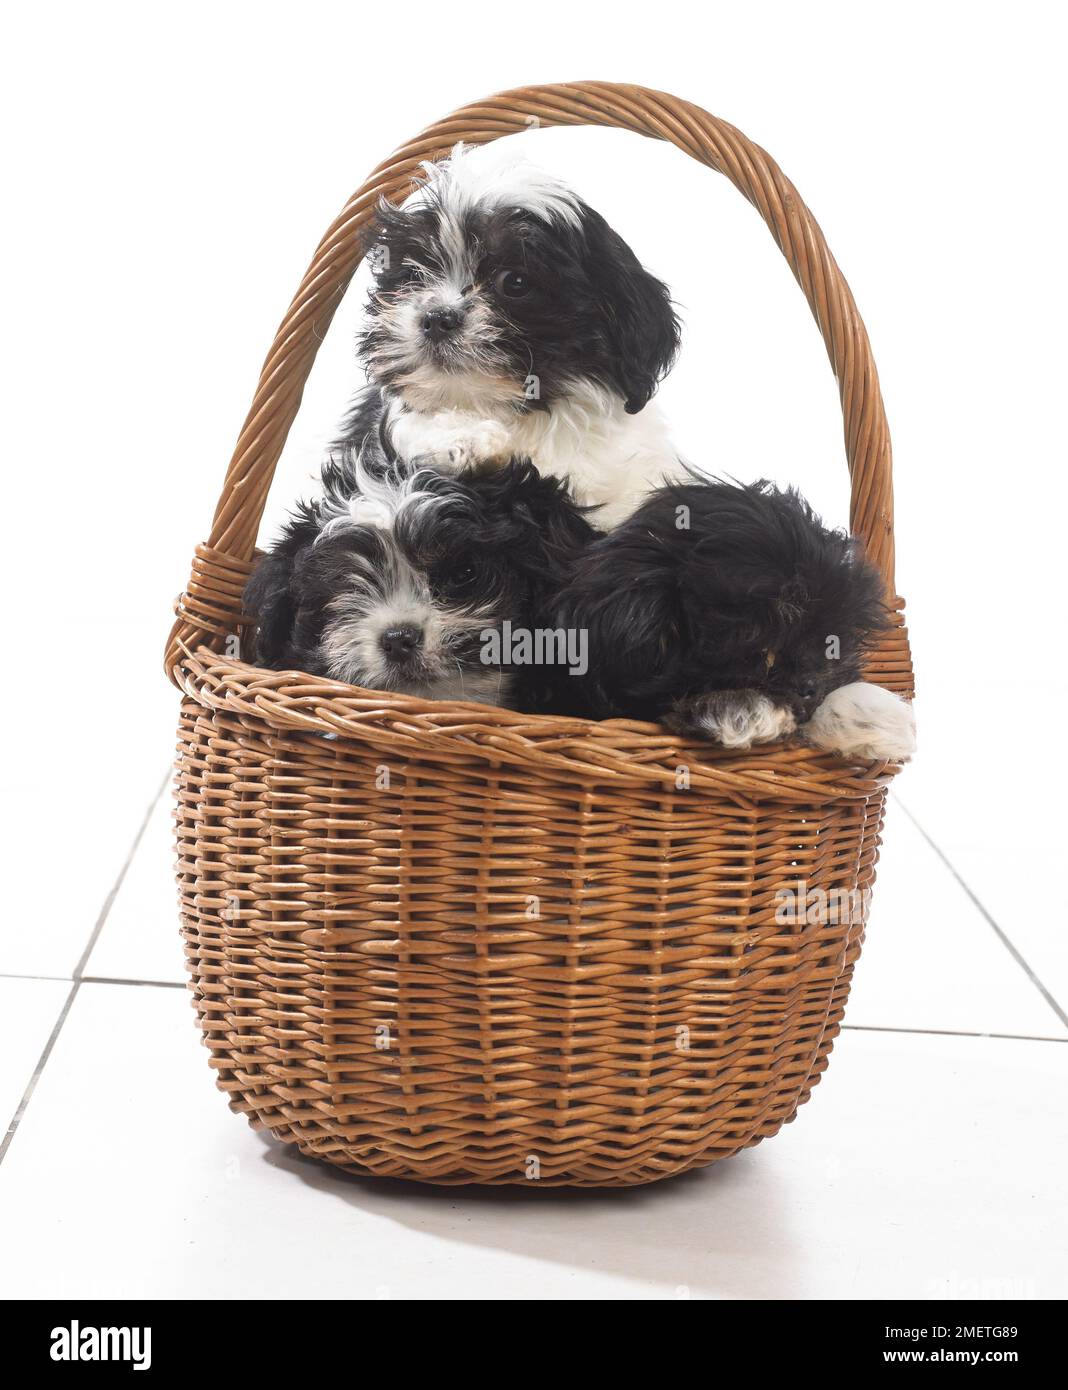 Tre in bianco e nero di cuccioli seduti nel cesto di vimini Foto Stock